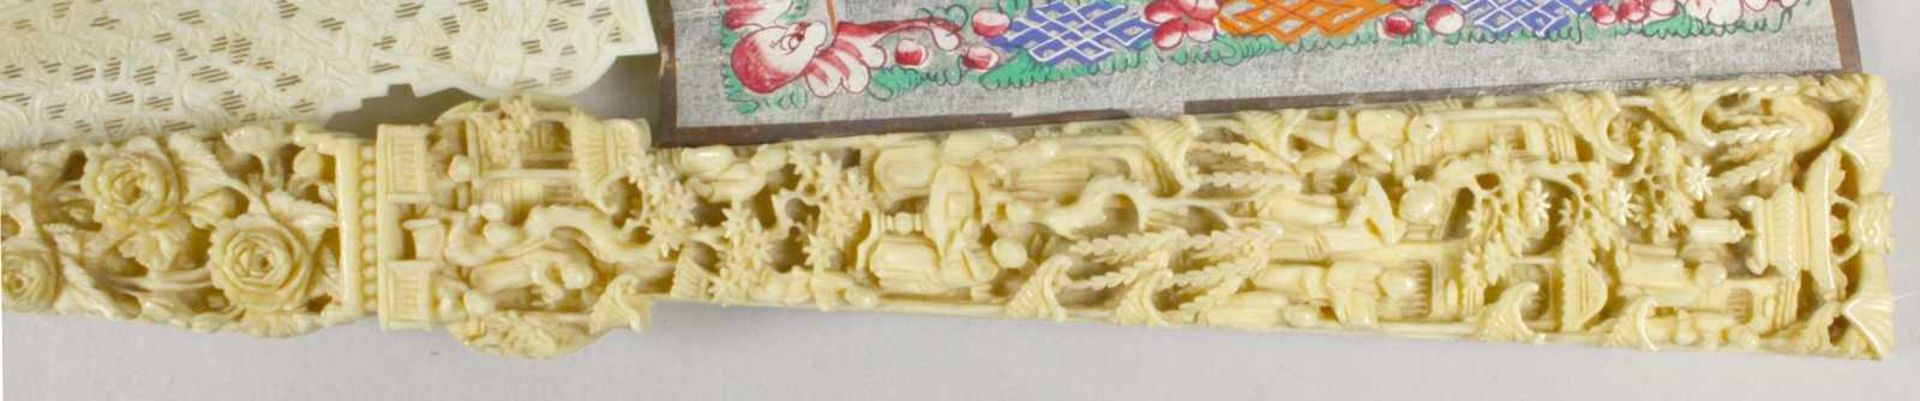 Fächer in Holz-Schatulle, China, 19. Jh., mit Alltagsszenerien mit großer Anzahl vonPersonen, - Bild 4 aus 17